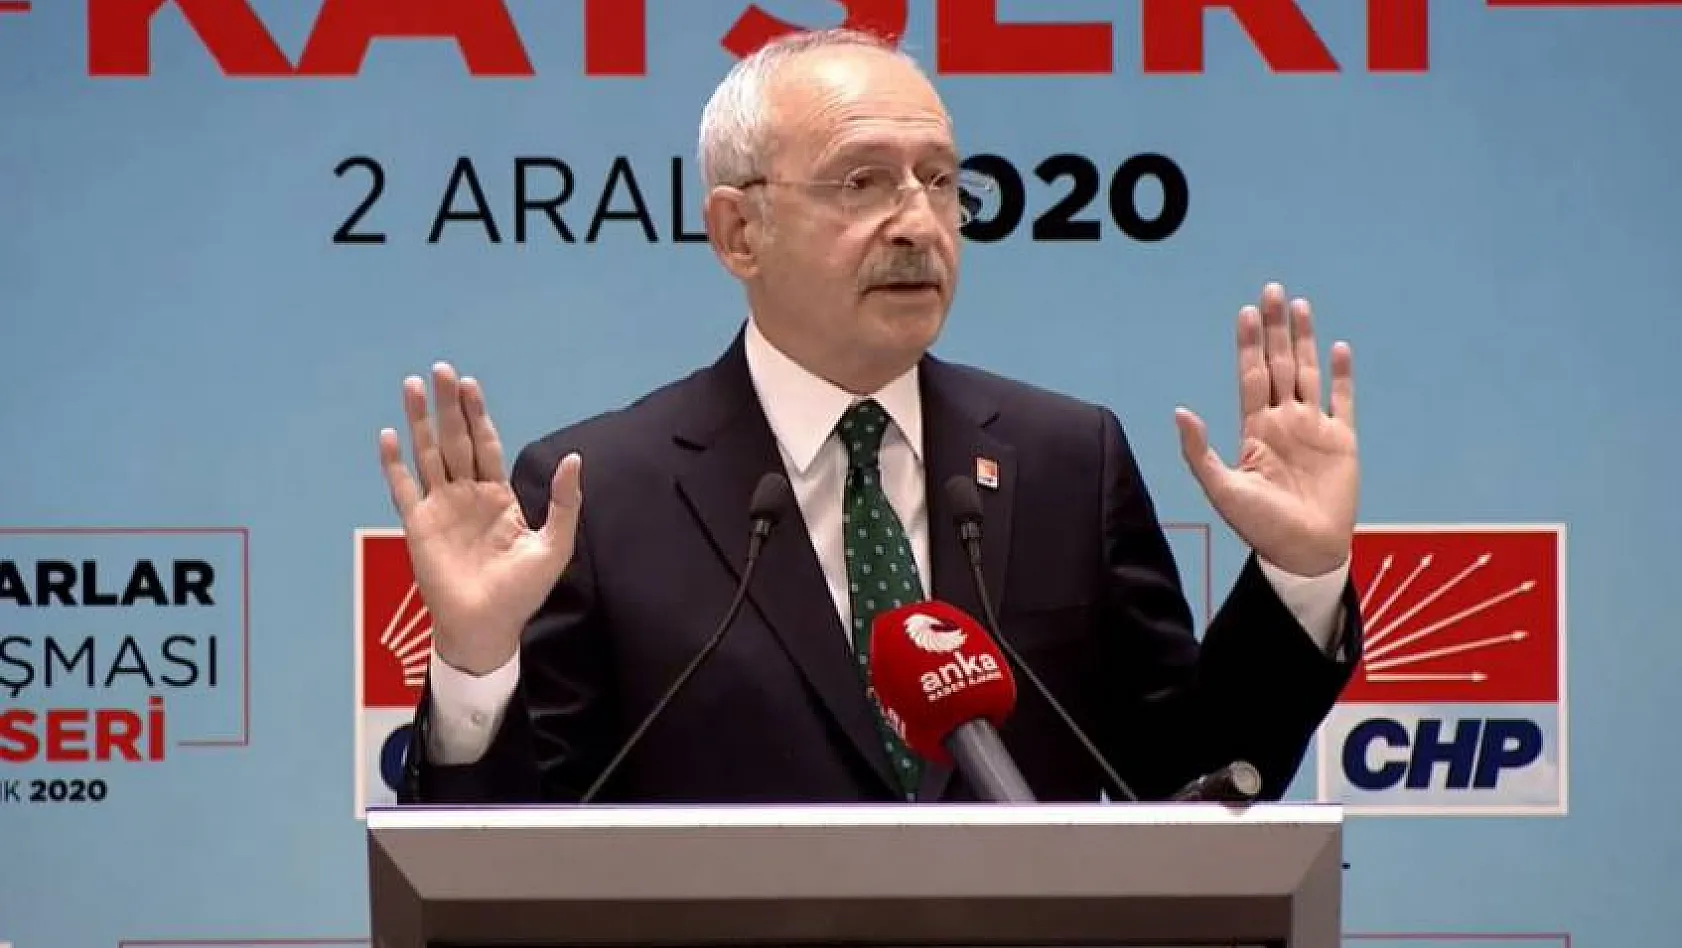 CHP Lideri Kılıçdaroğlu: Kayseri'de oyumuz az, ama kabahat Kayseri'de değil bizde!Çünkü…